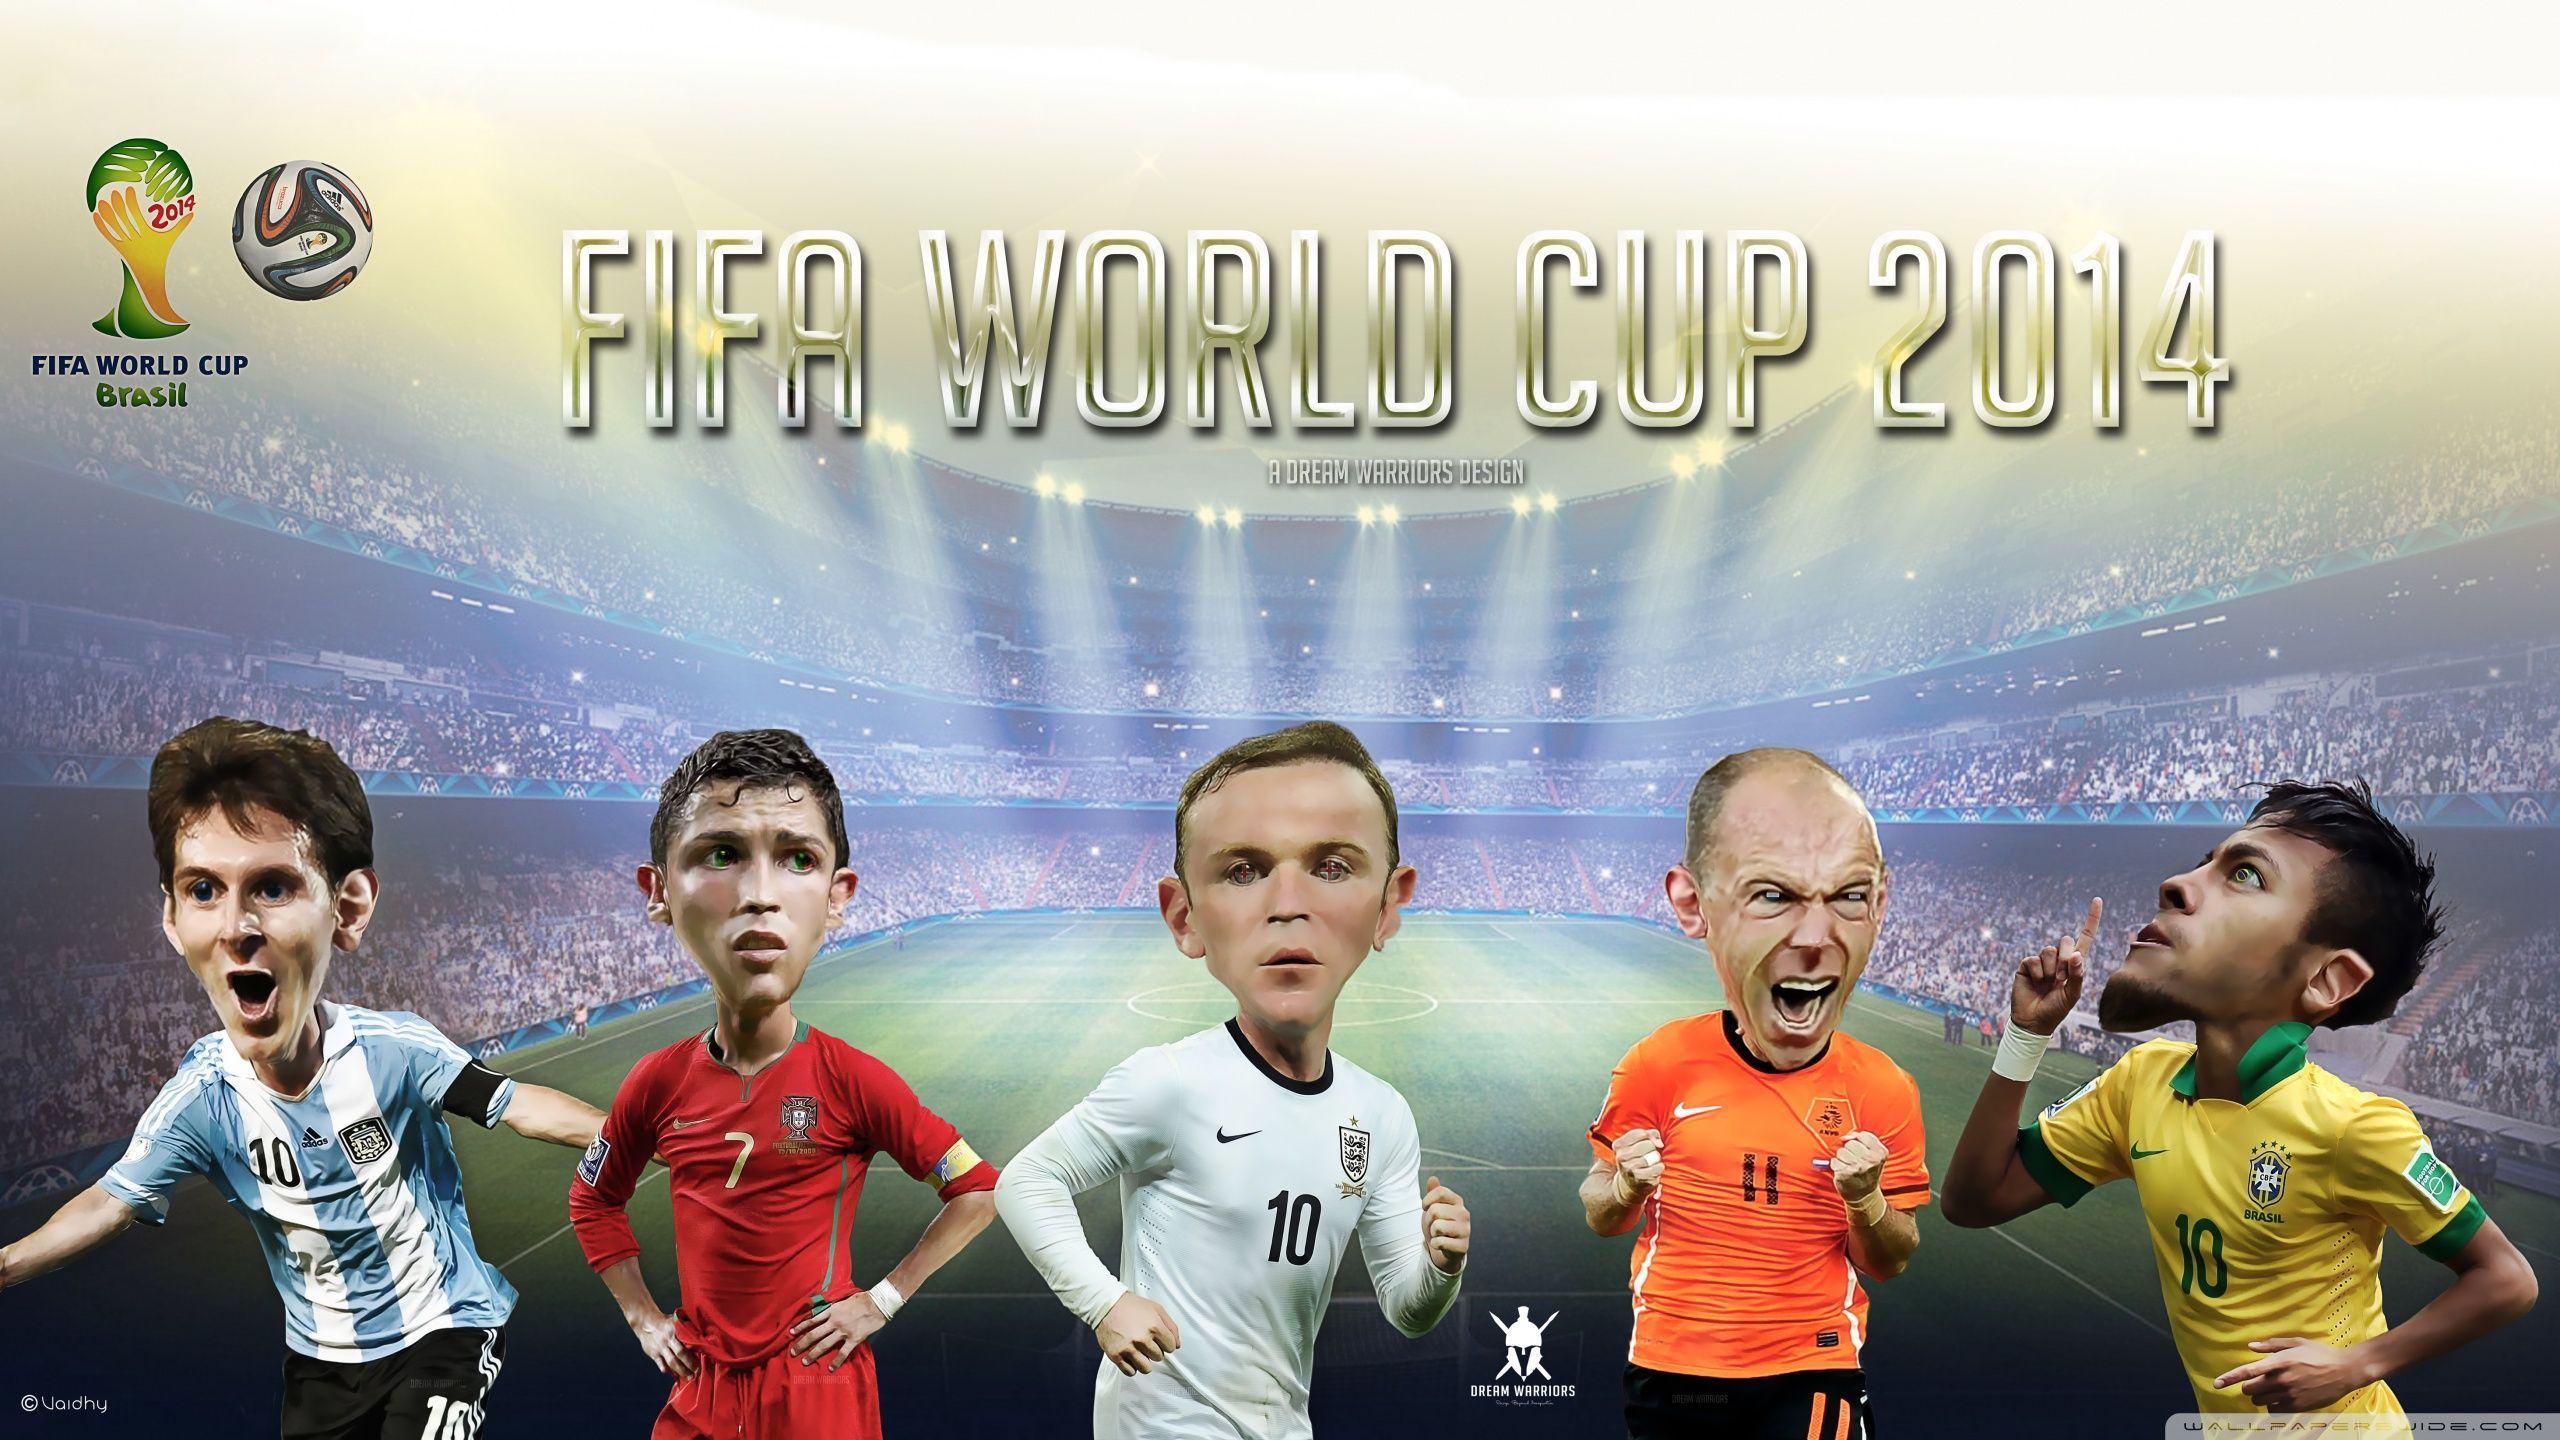 FIFA World Cup 2014 HD desktop wallpaper, High Definition